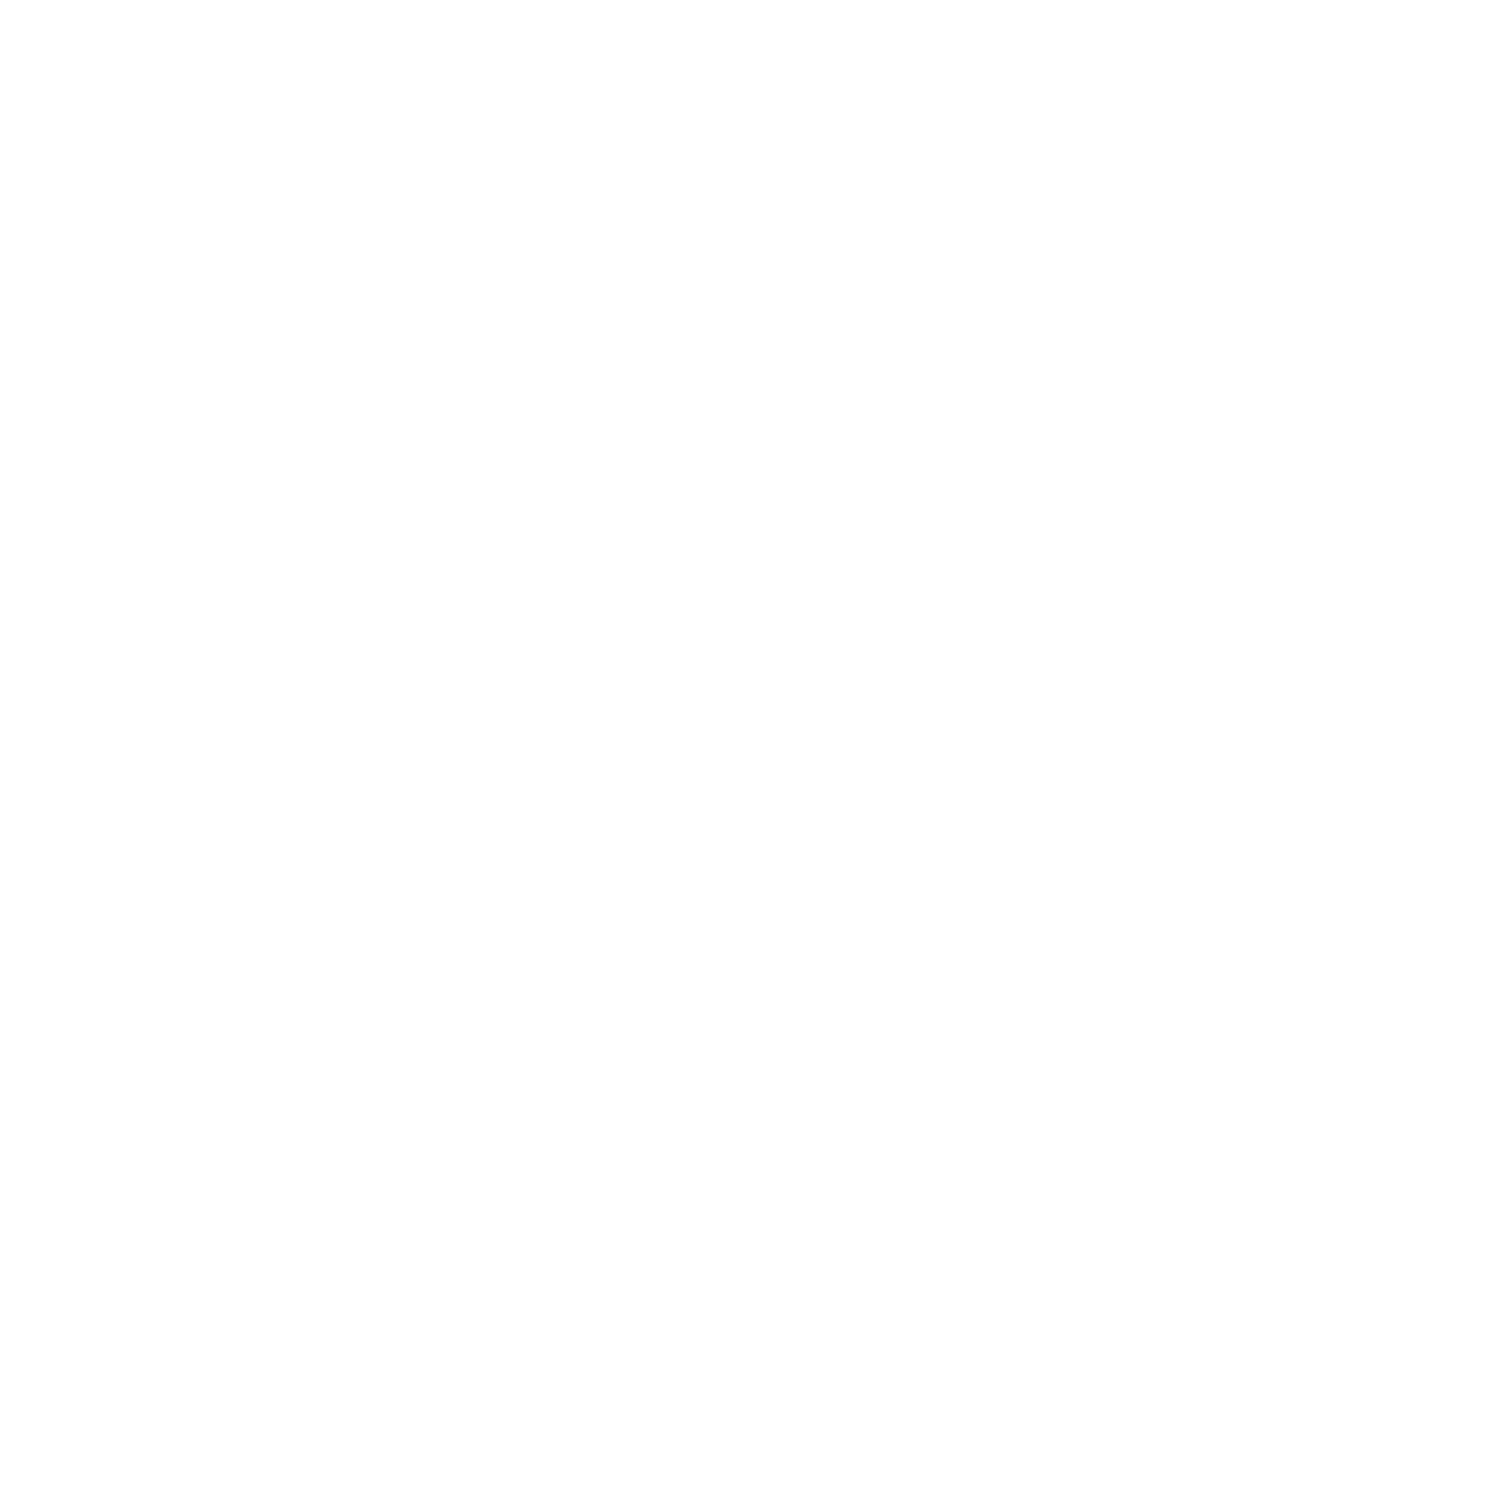 Ben Linderman